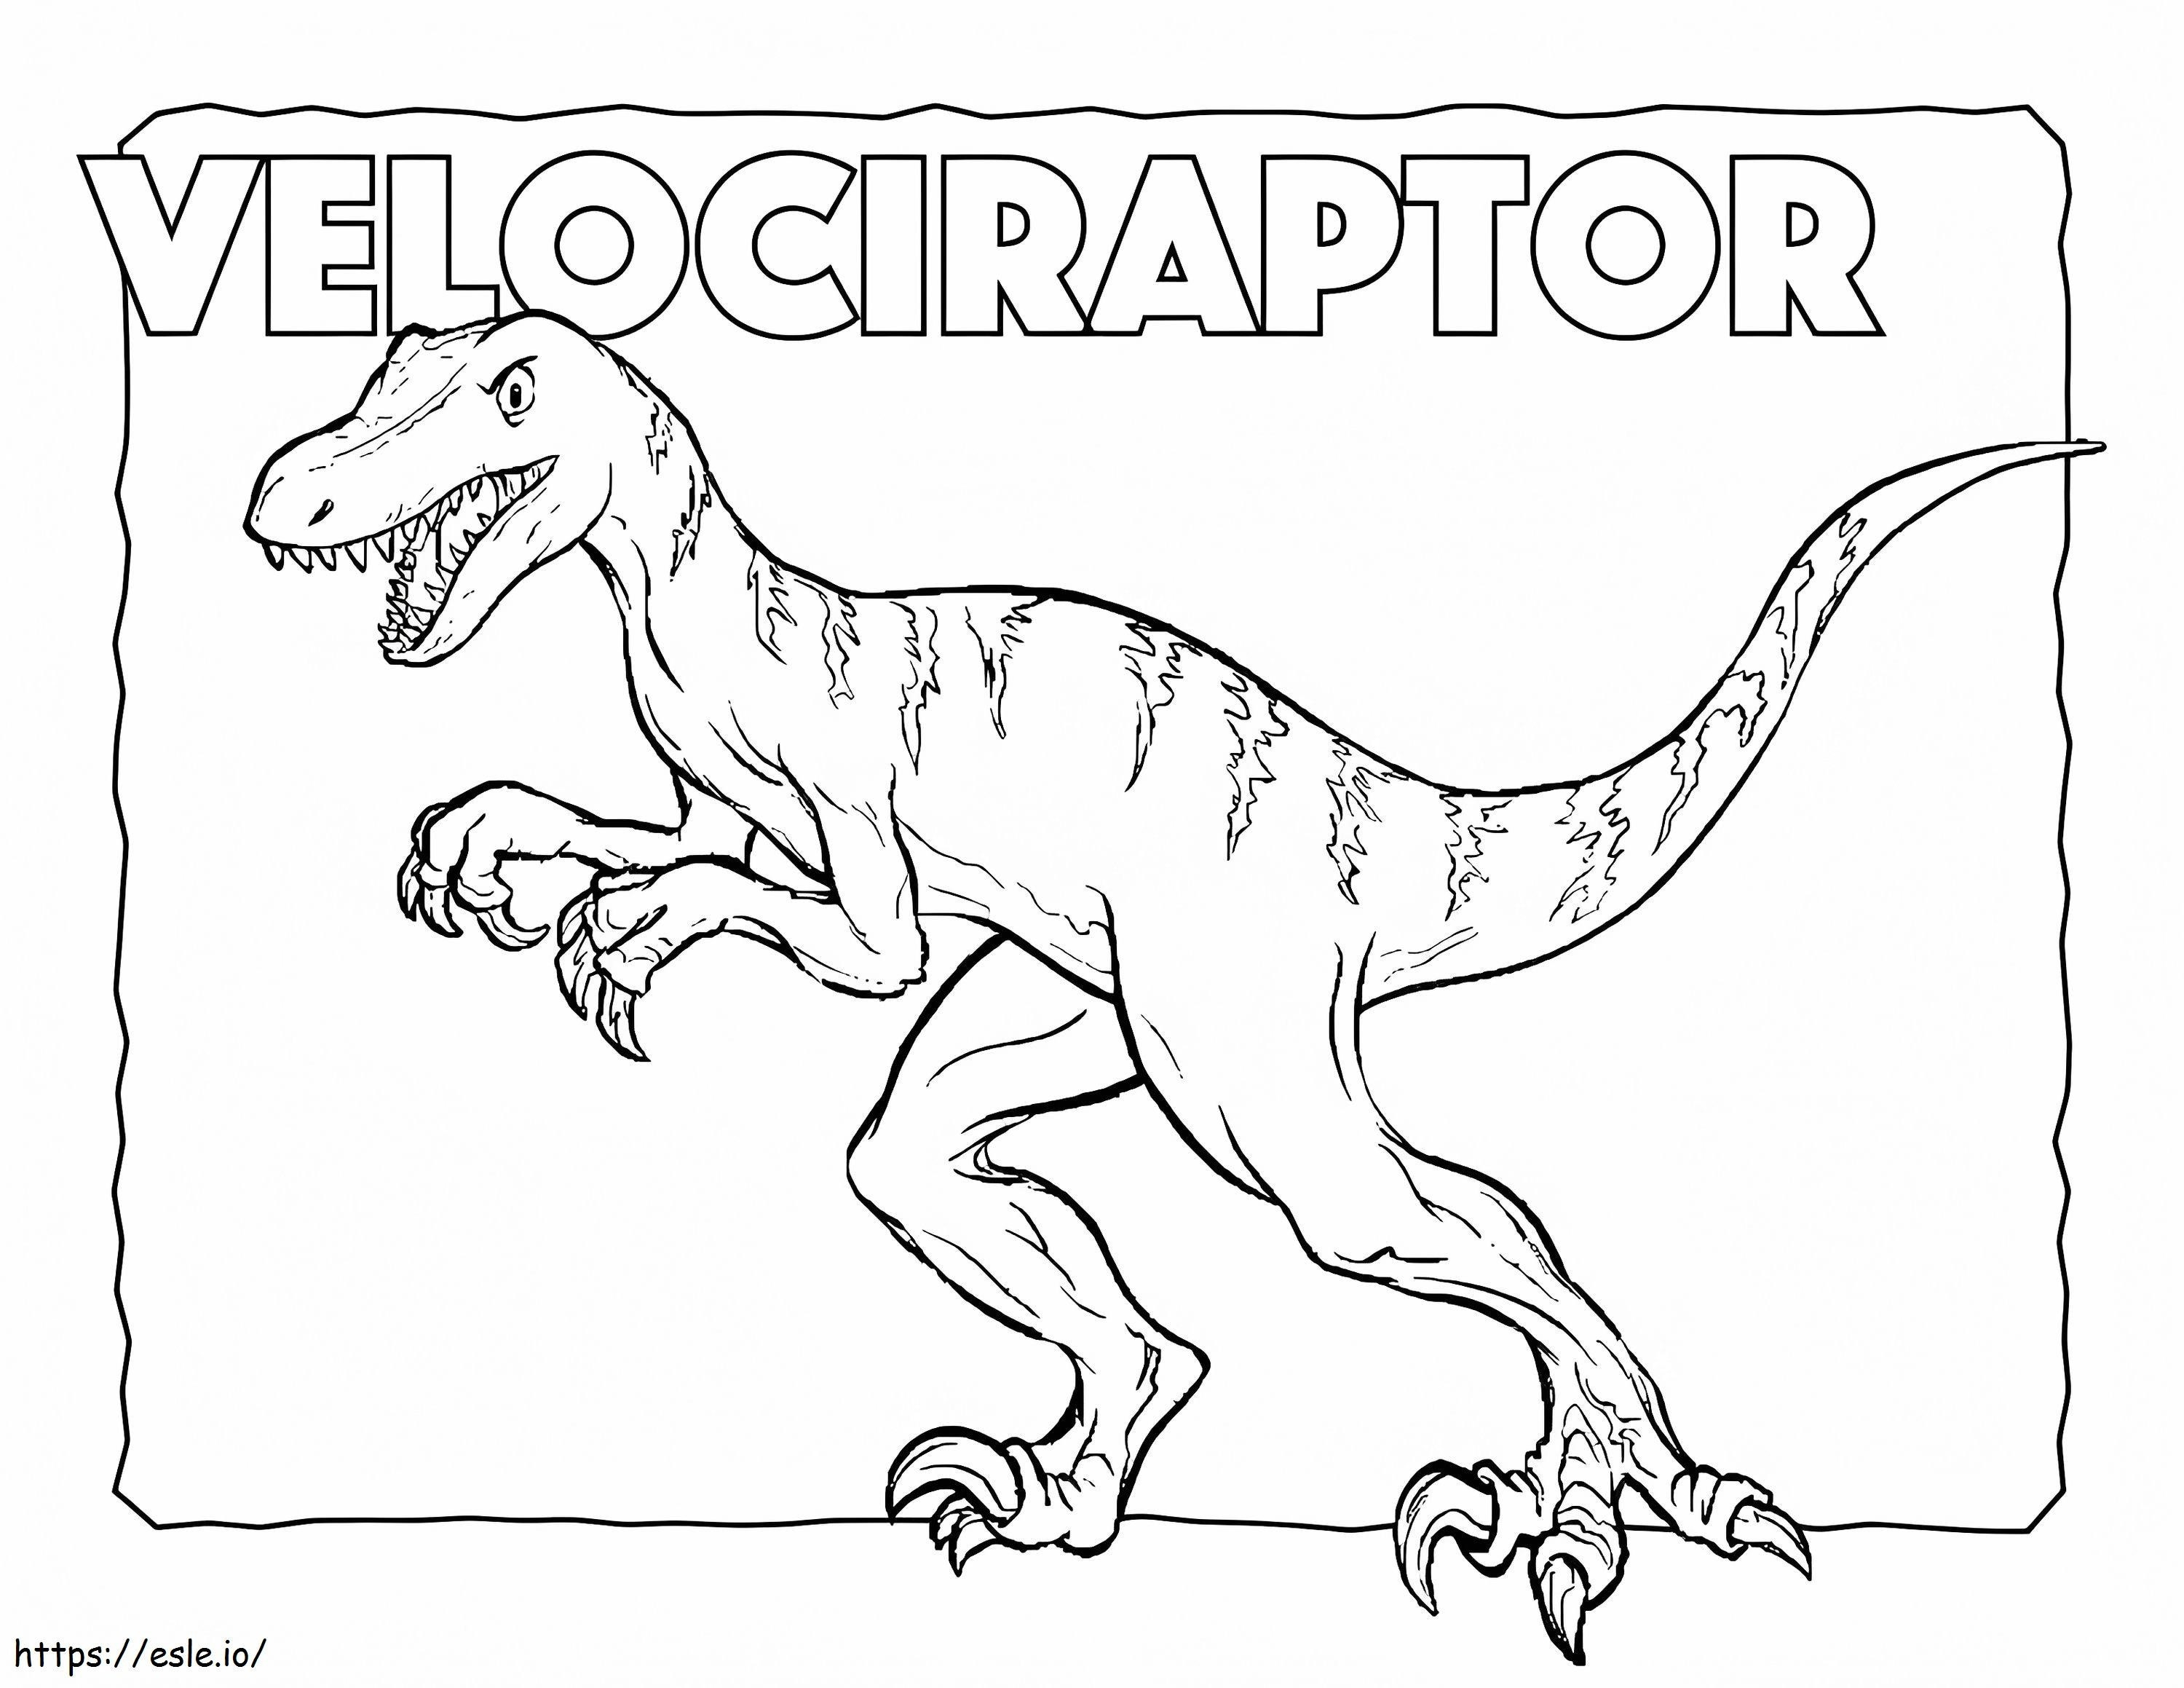 Velociraptor 8 da colorare